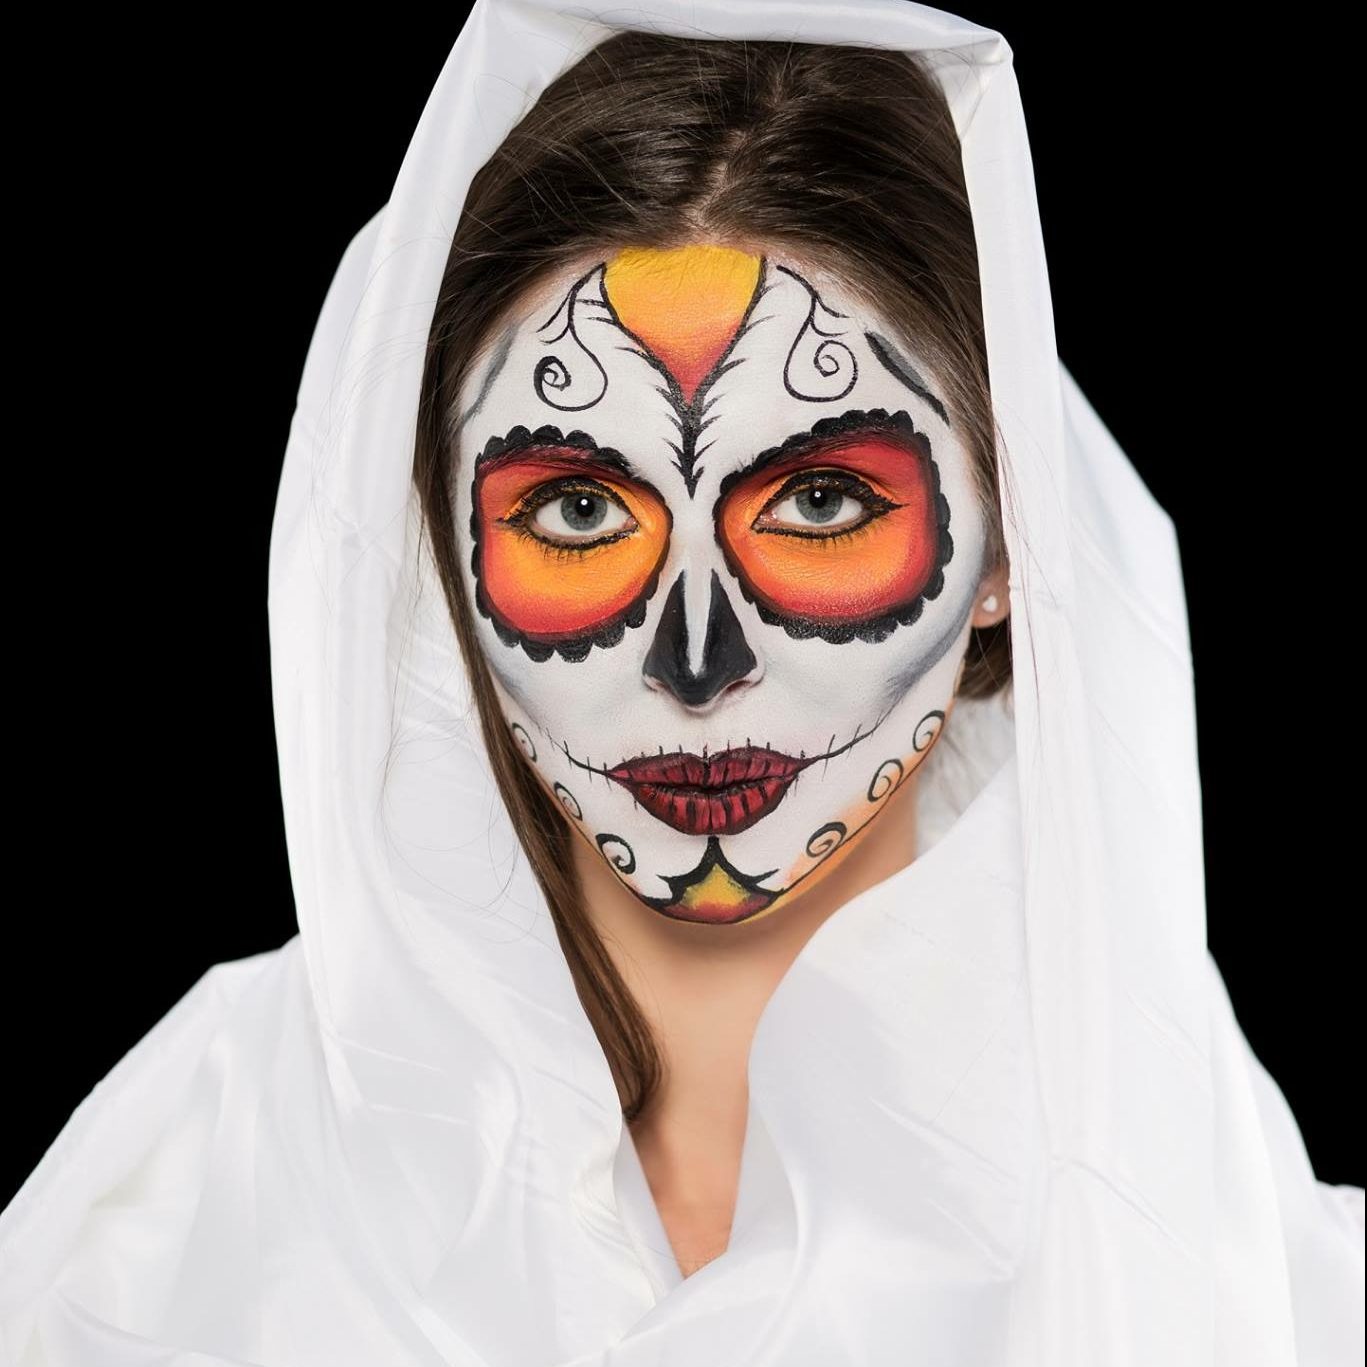 Грим на Хэллоуин Киев, Боди-арт на Хеллоуин Киев, Аквагрим киев, Halloween mask, грим на хеллоуин, макияж на хеллоуин